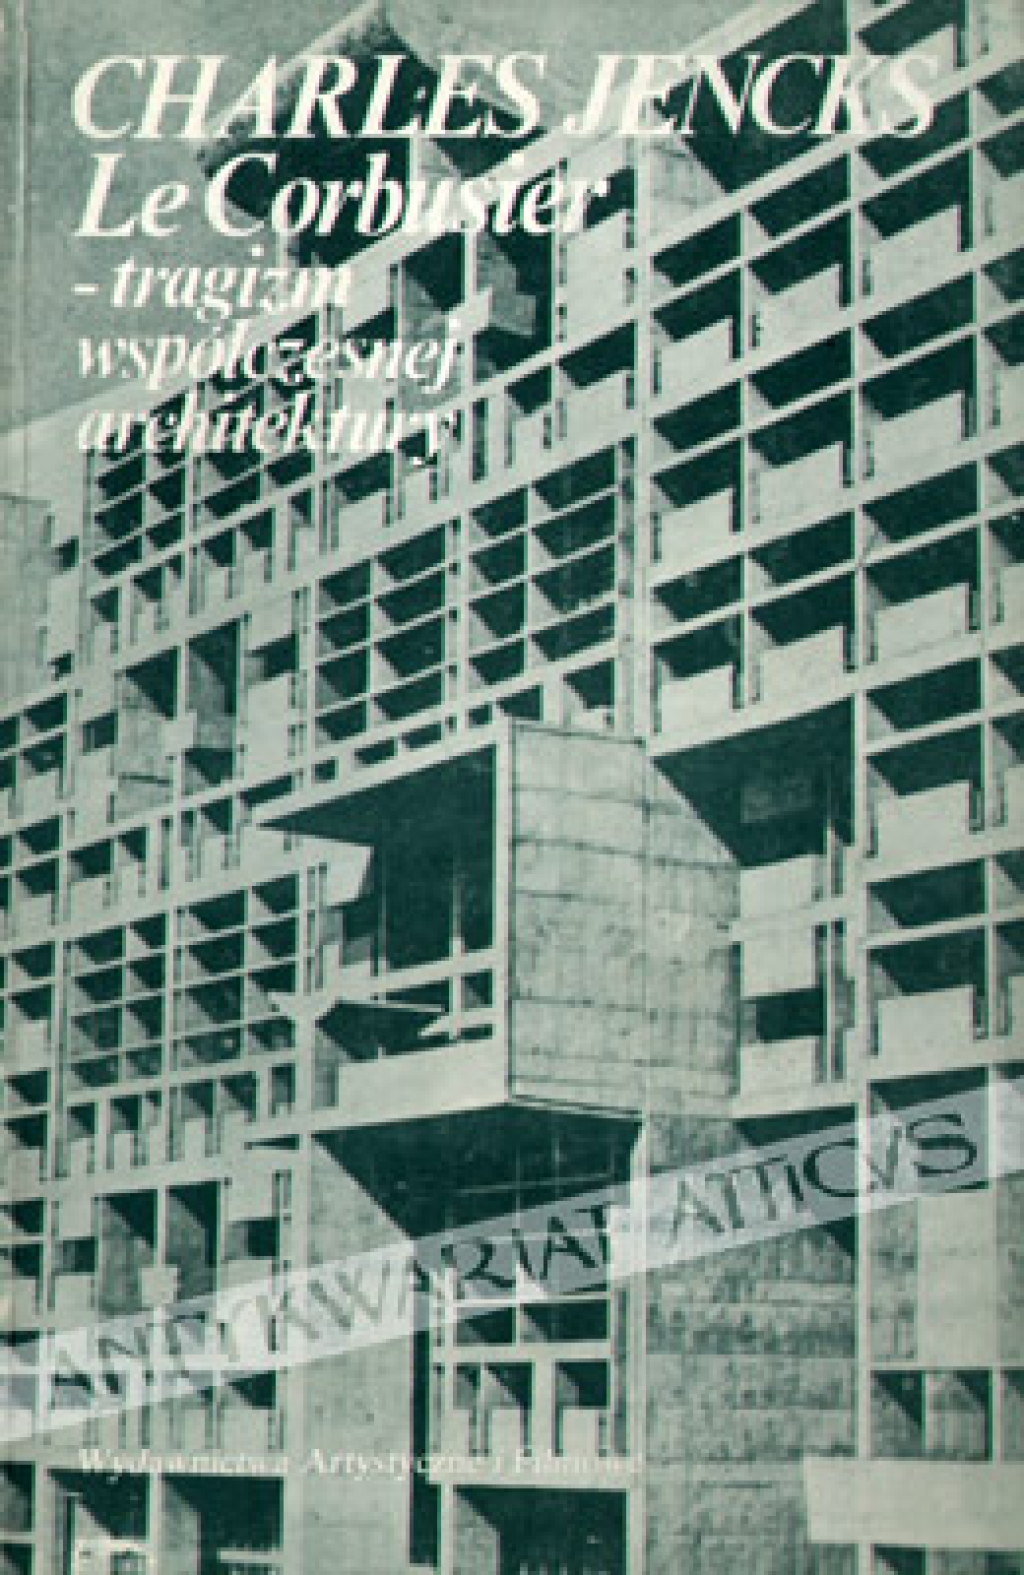 Le Corbusier - tragizm współczesnej architektury